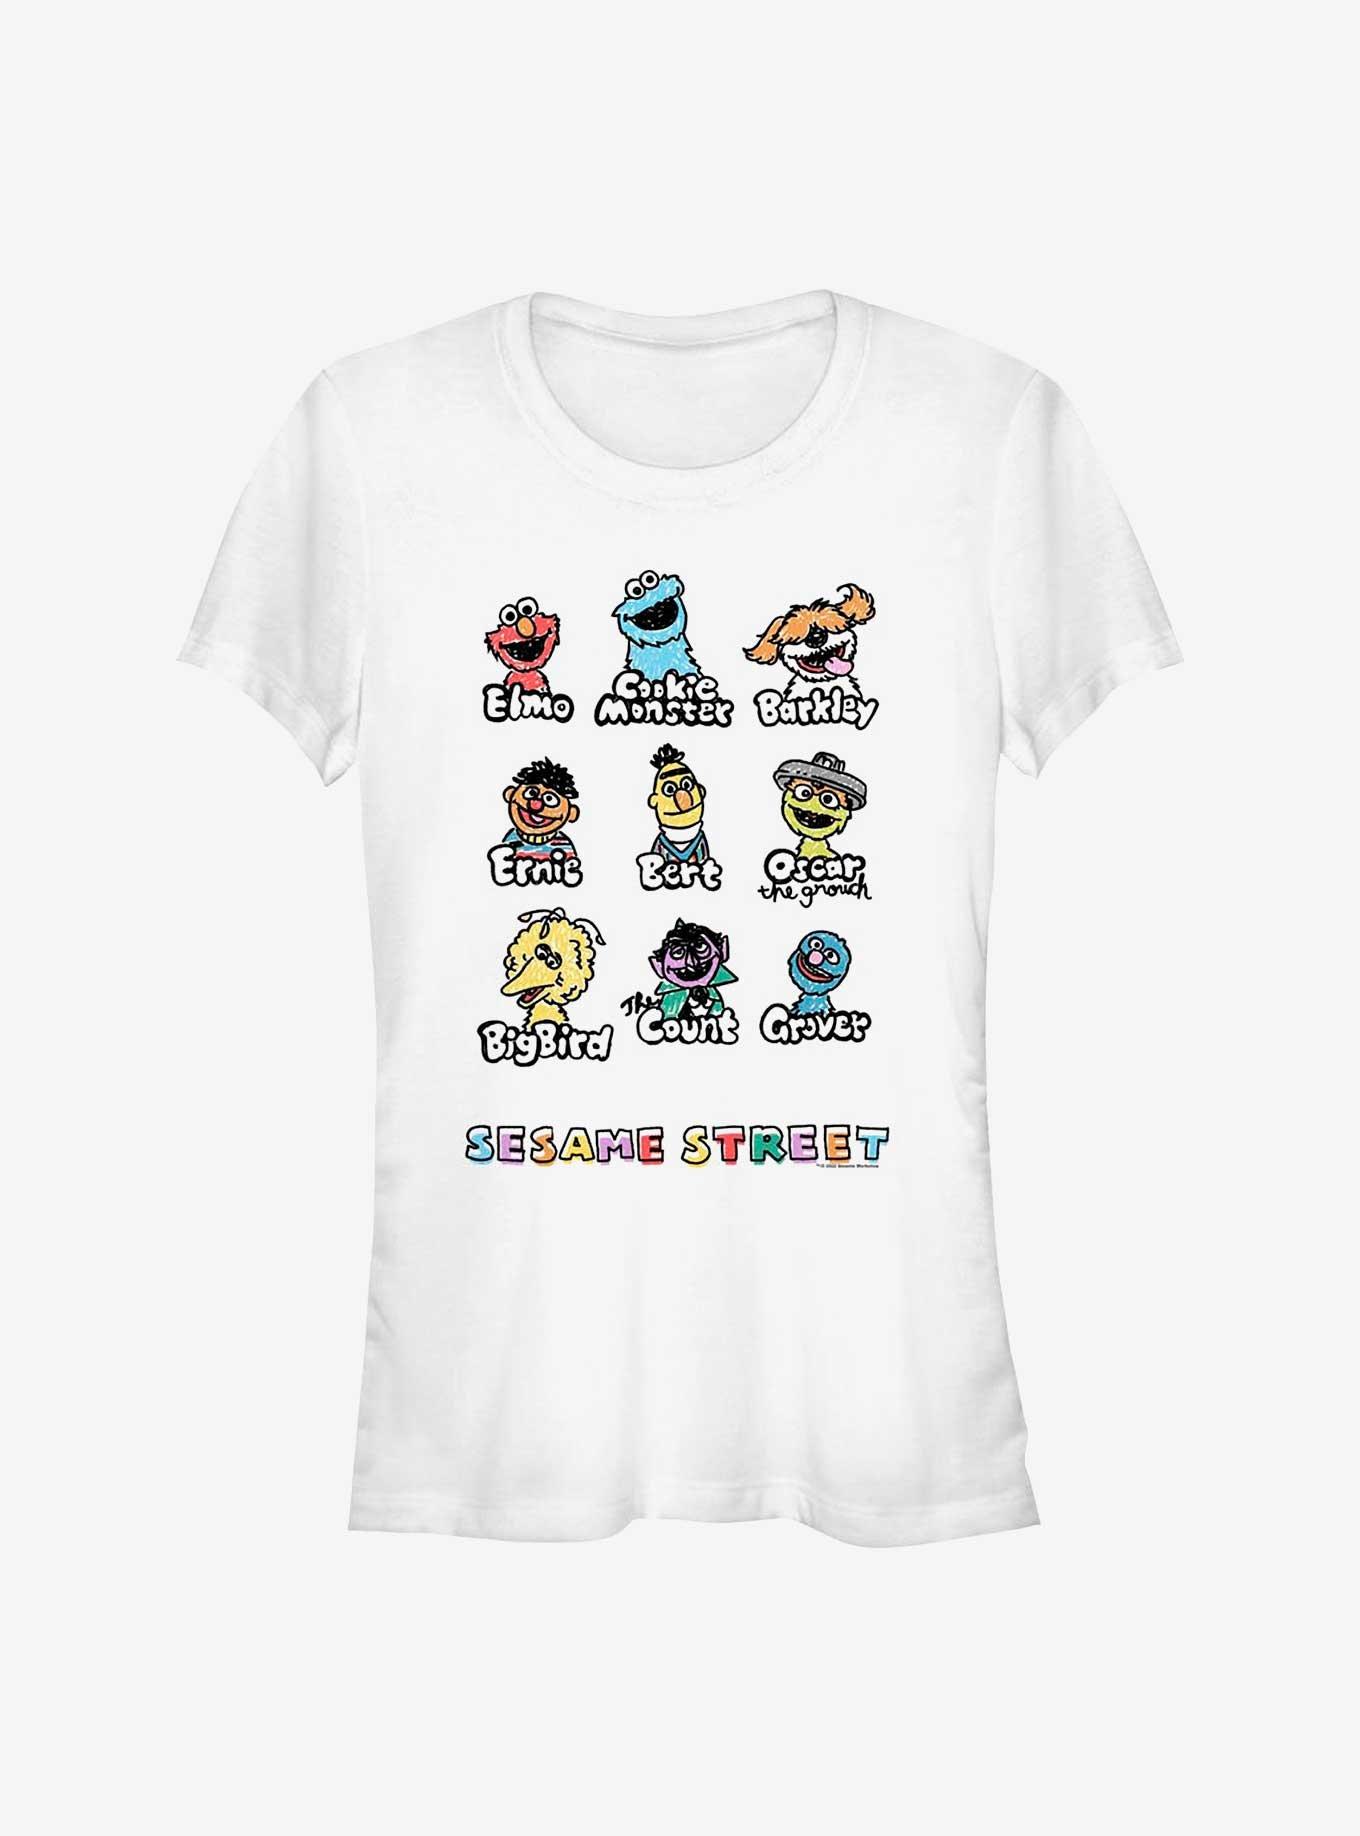 Sesame Street Puppet Line Up Girls T-Shirt